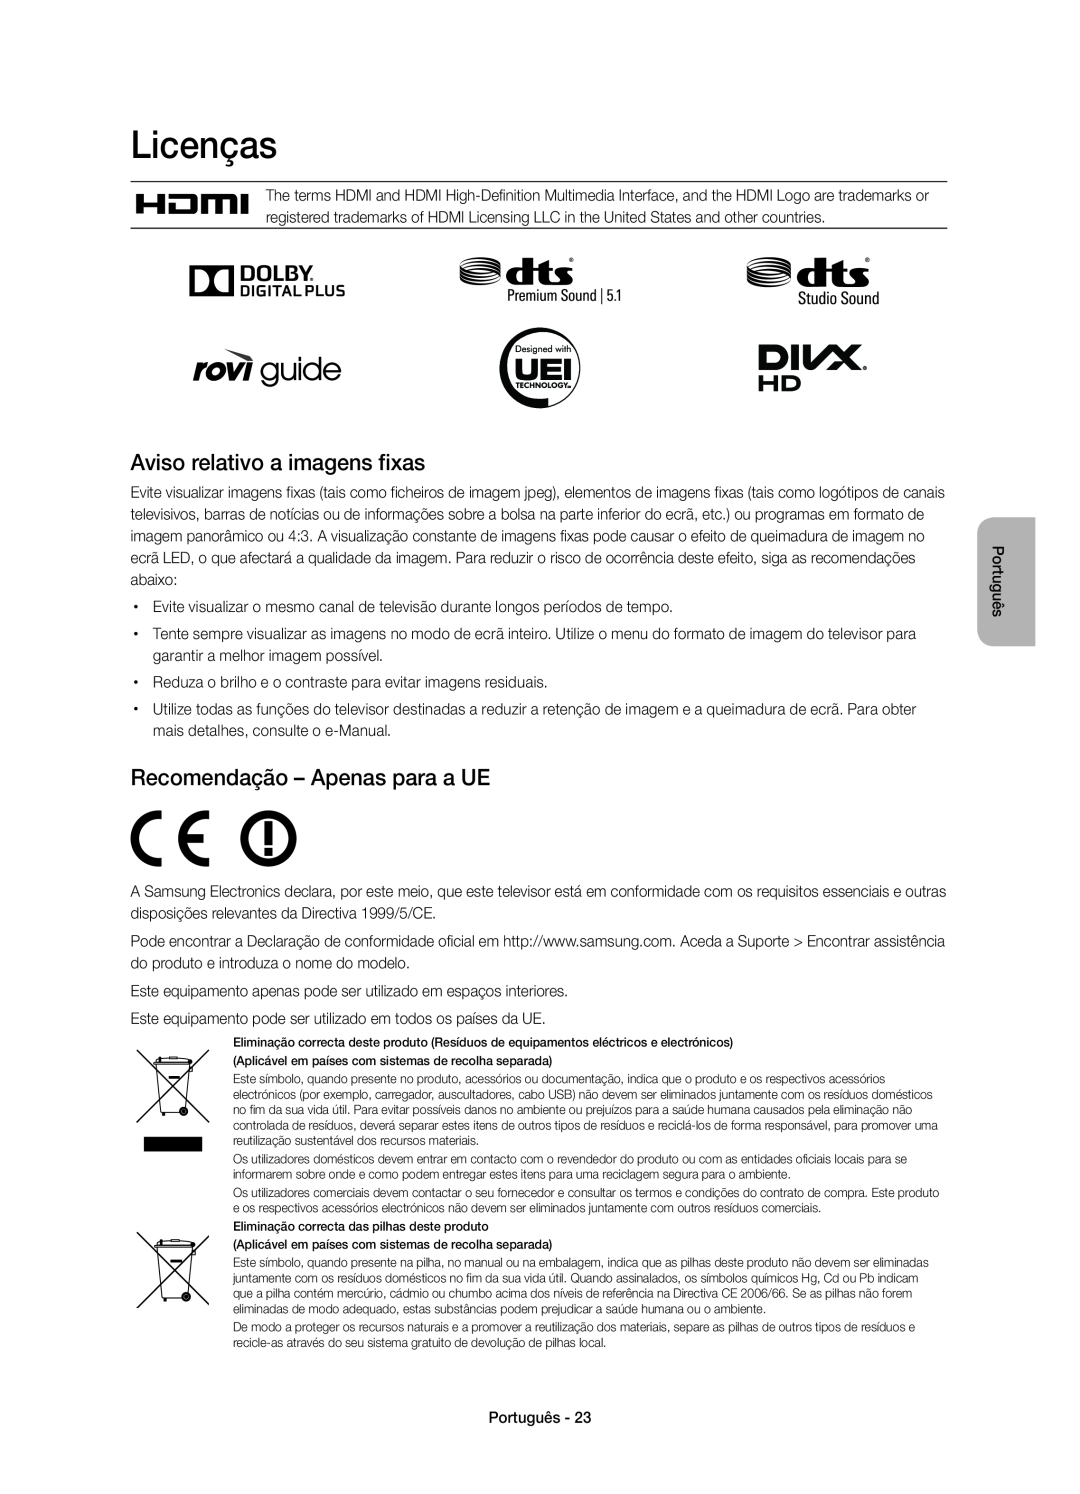 Samsung UE32H6410SSXXC manual Licenças, Aviso relativo a imagens fixas, Recomendação - Apenas para a UE, Português 